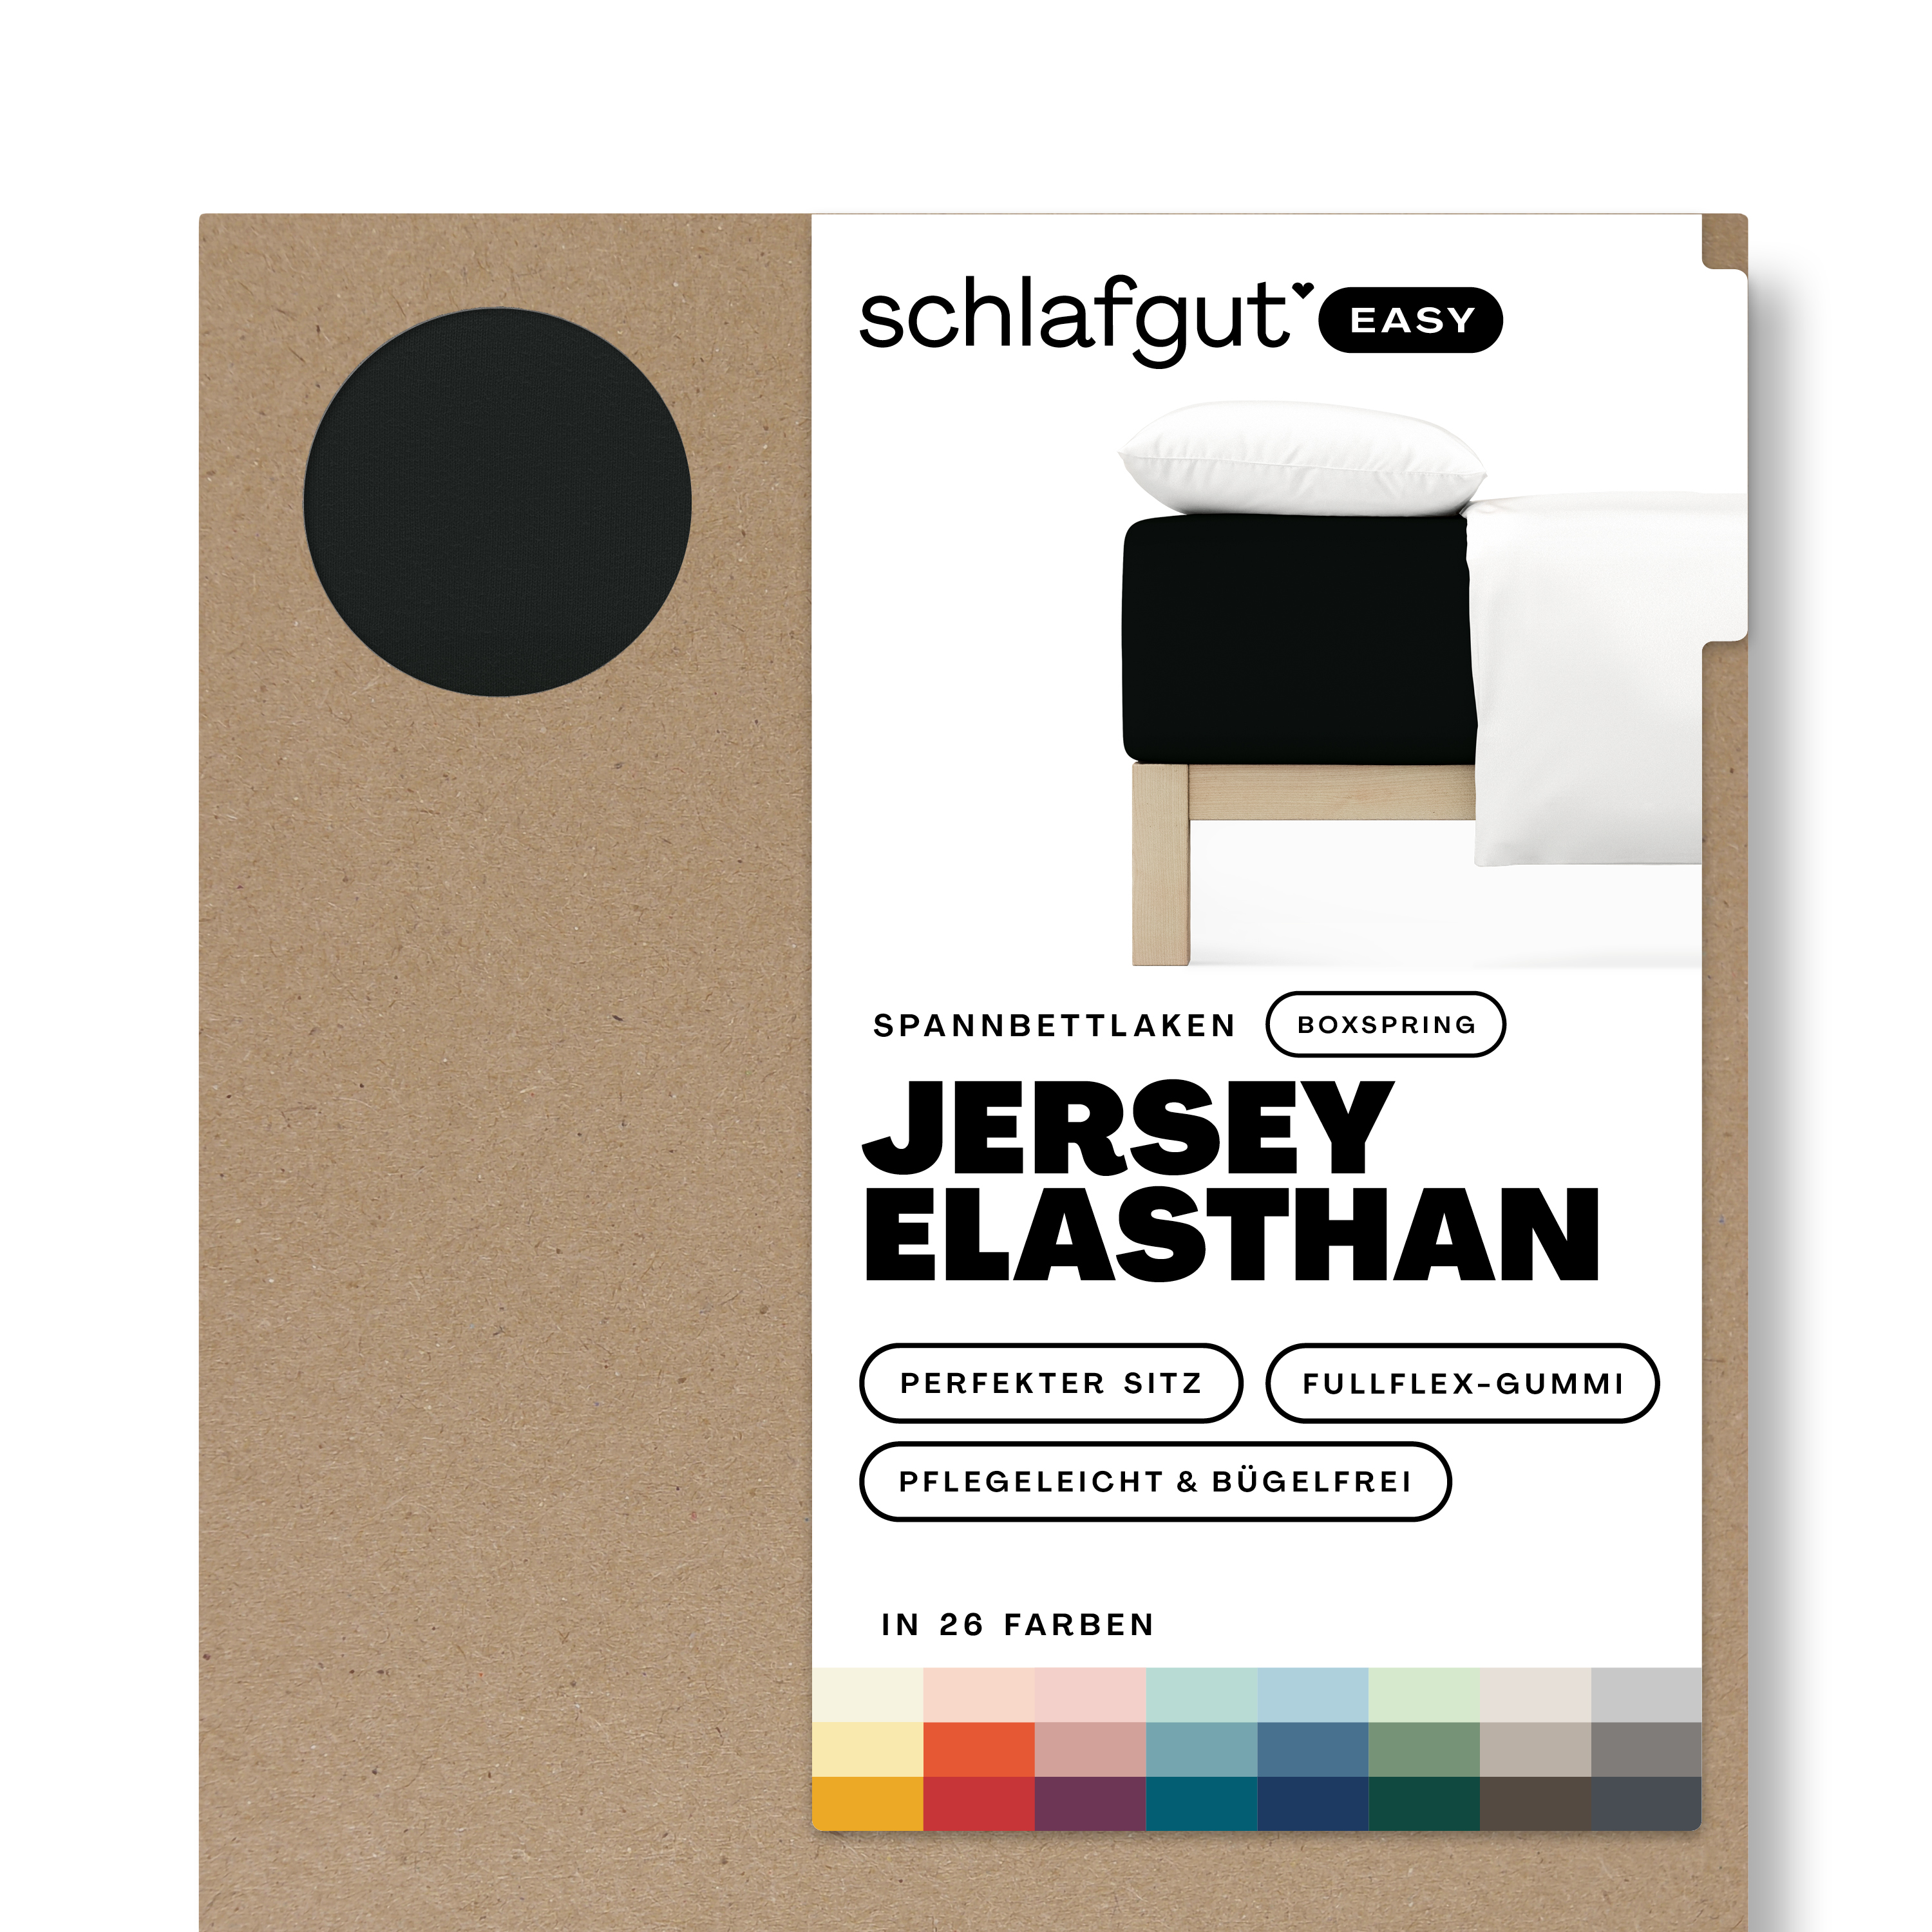 Das Produktbild vom Spannbettlaken der Reihe Easy Elasthan Boxspring in Farbe off-black von Schlafgut